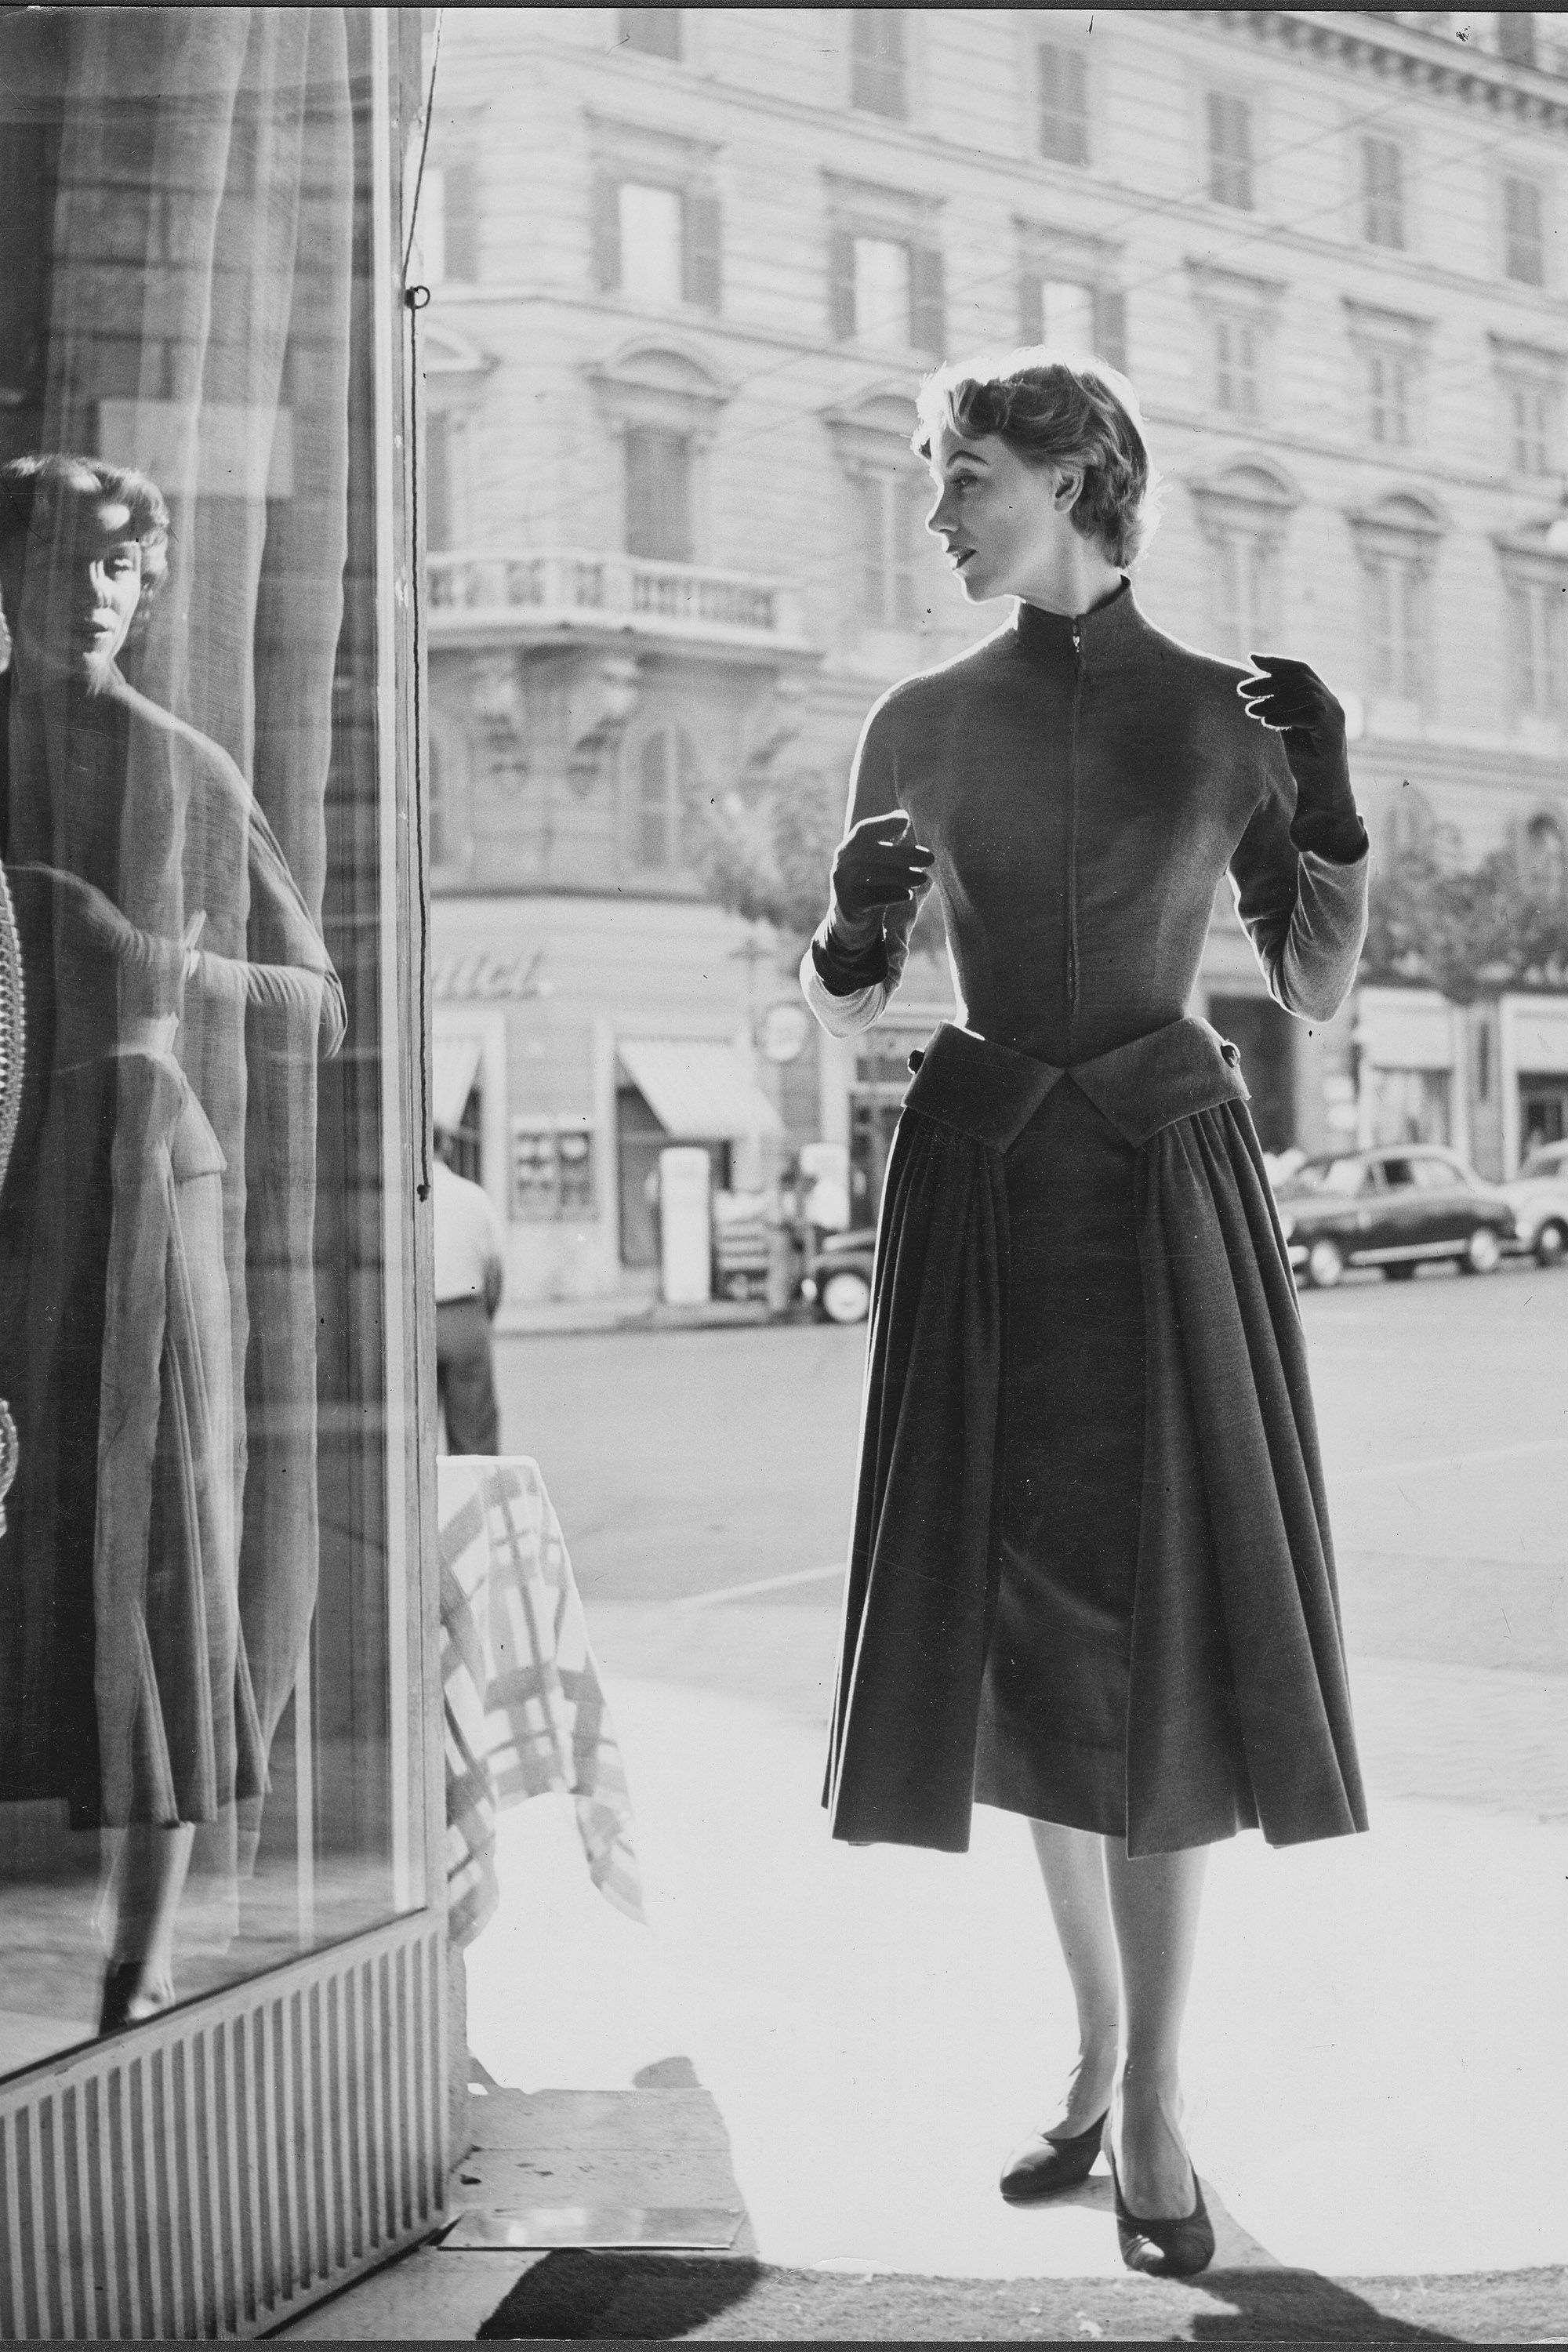 1950 clothing style